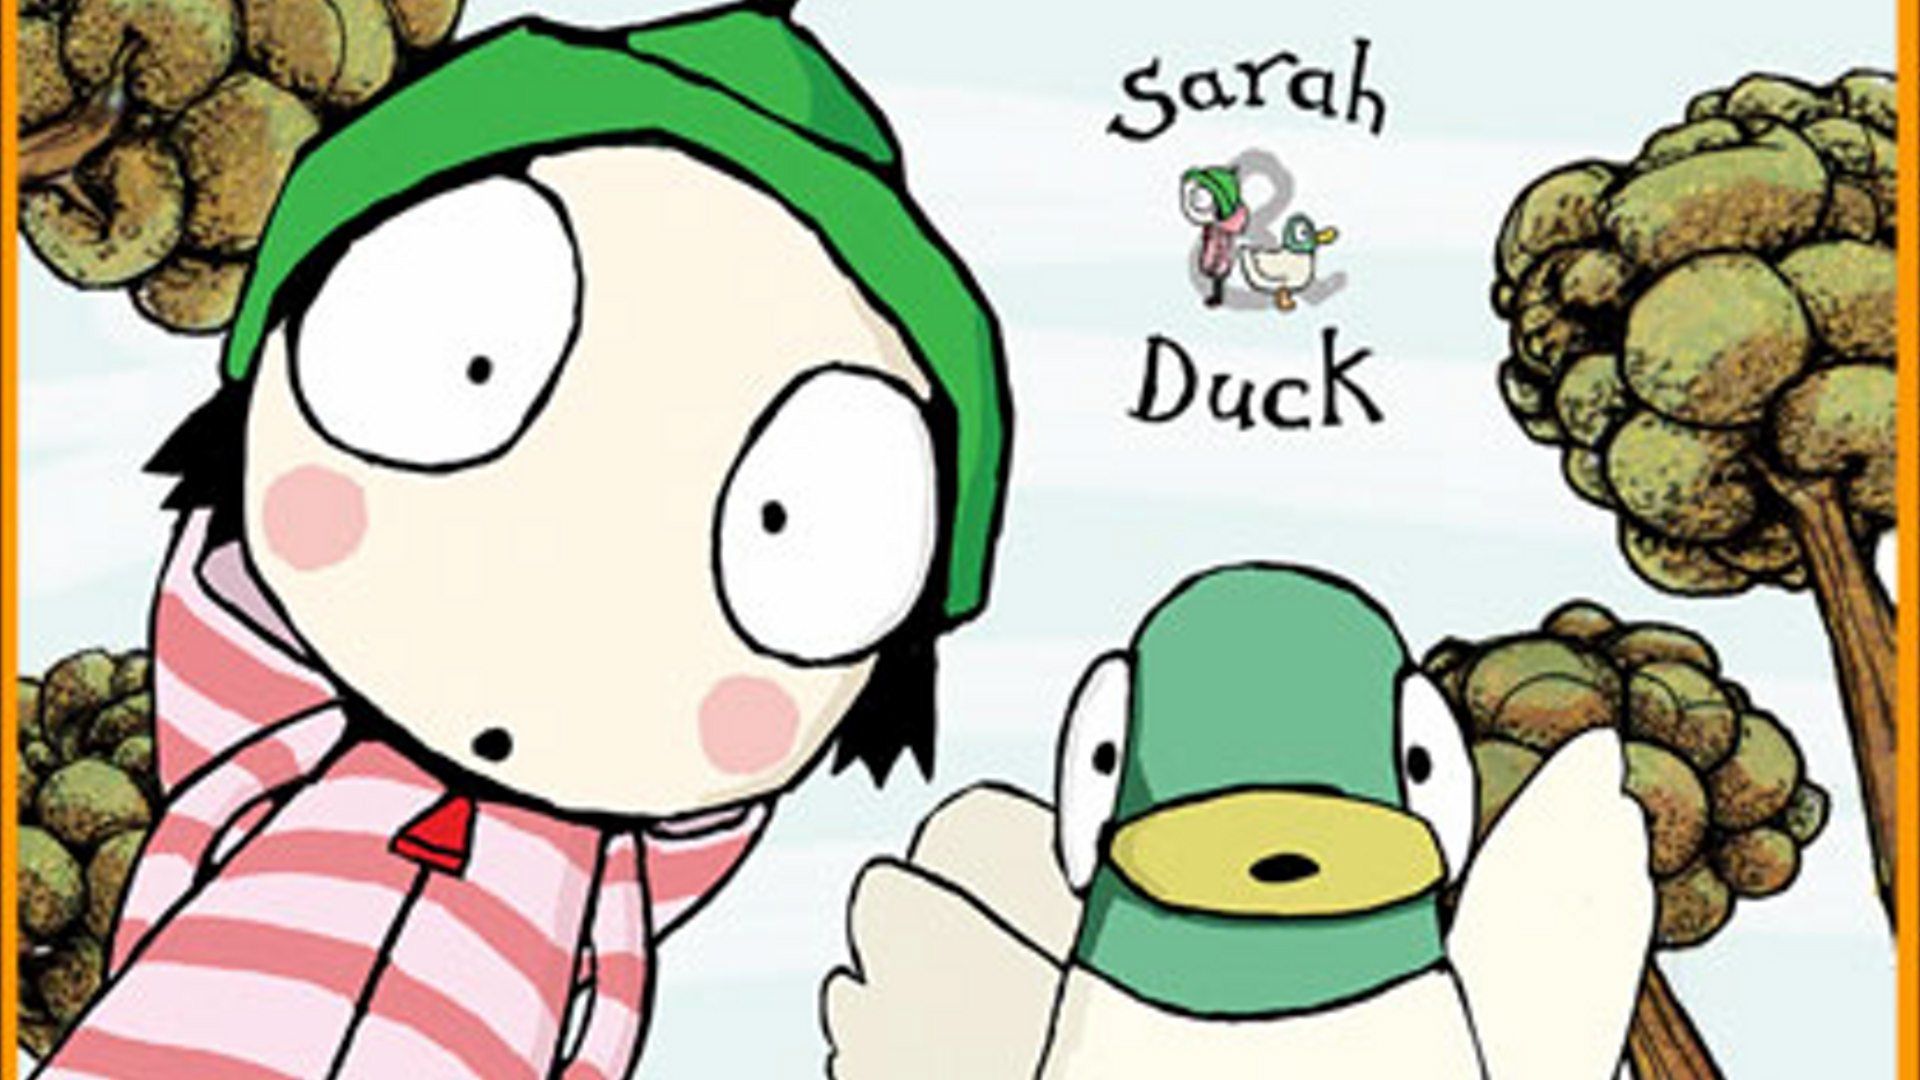 Sarah & Duck Image #129364 TVmaze.